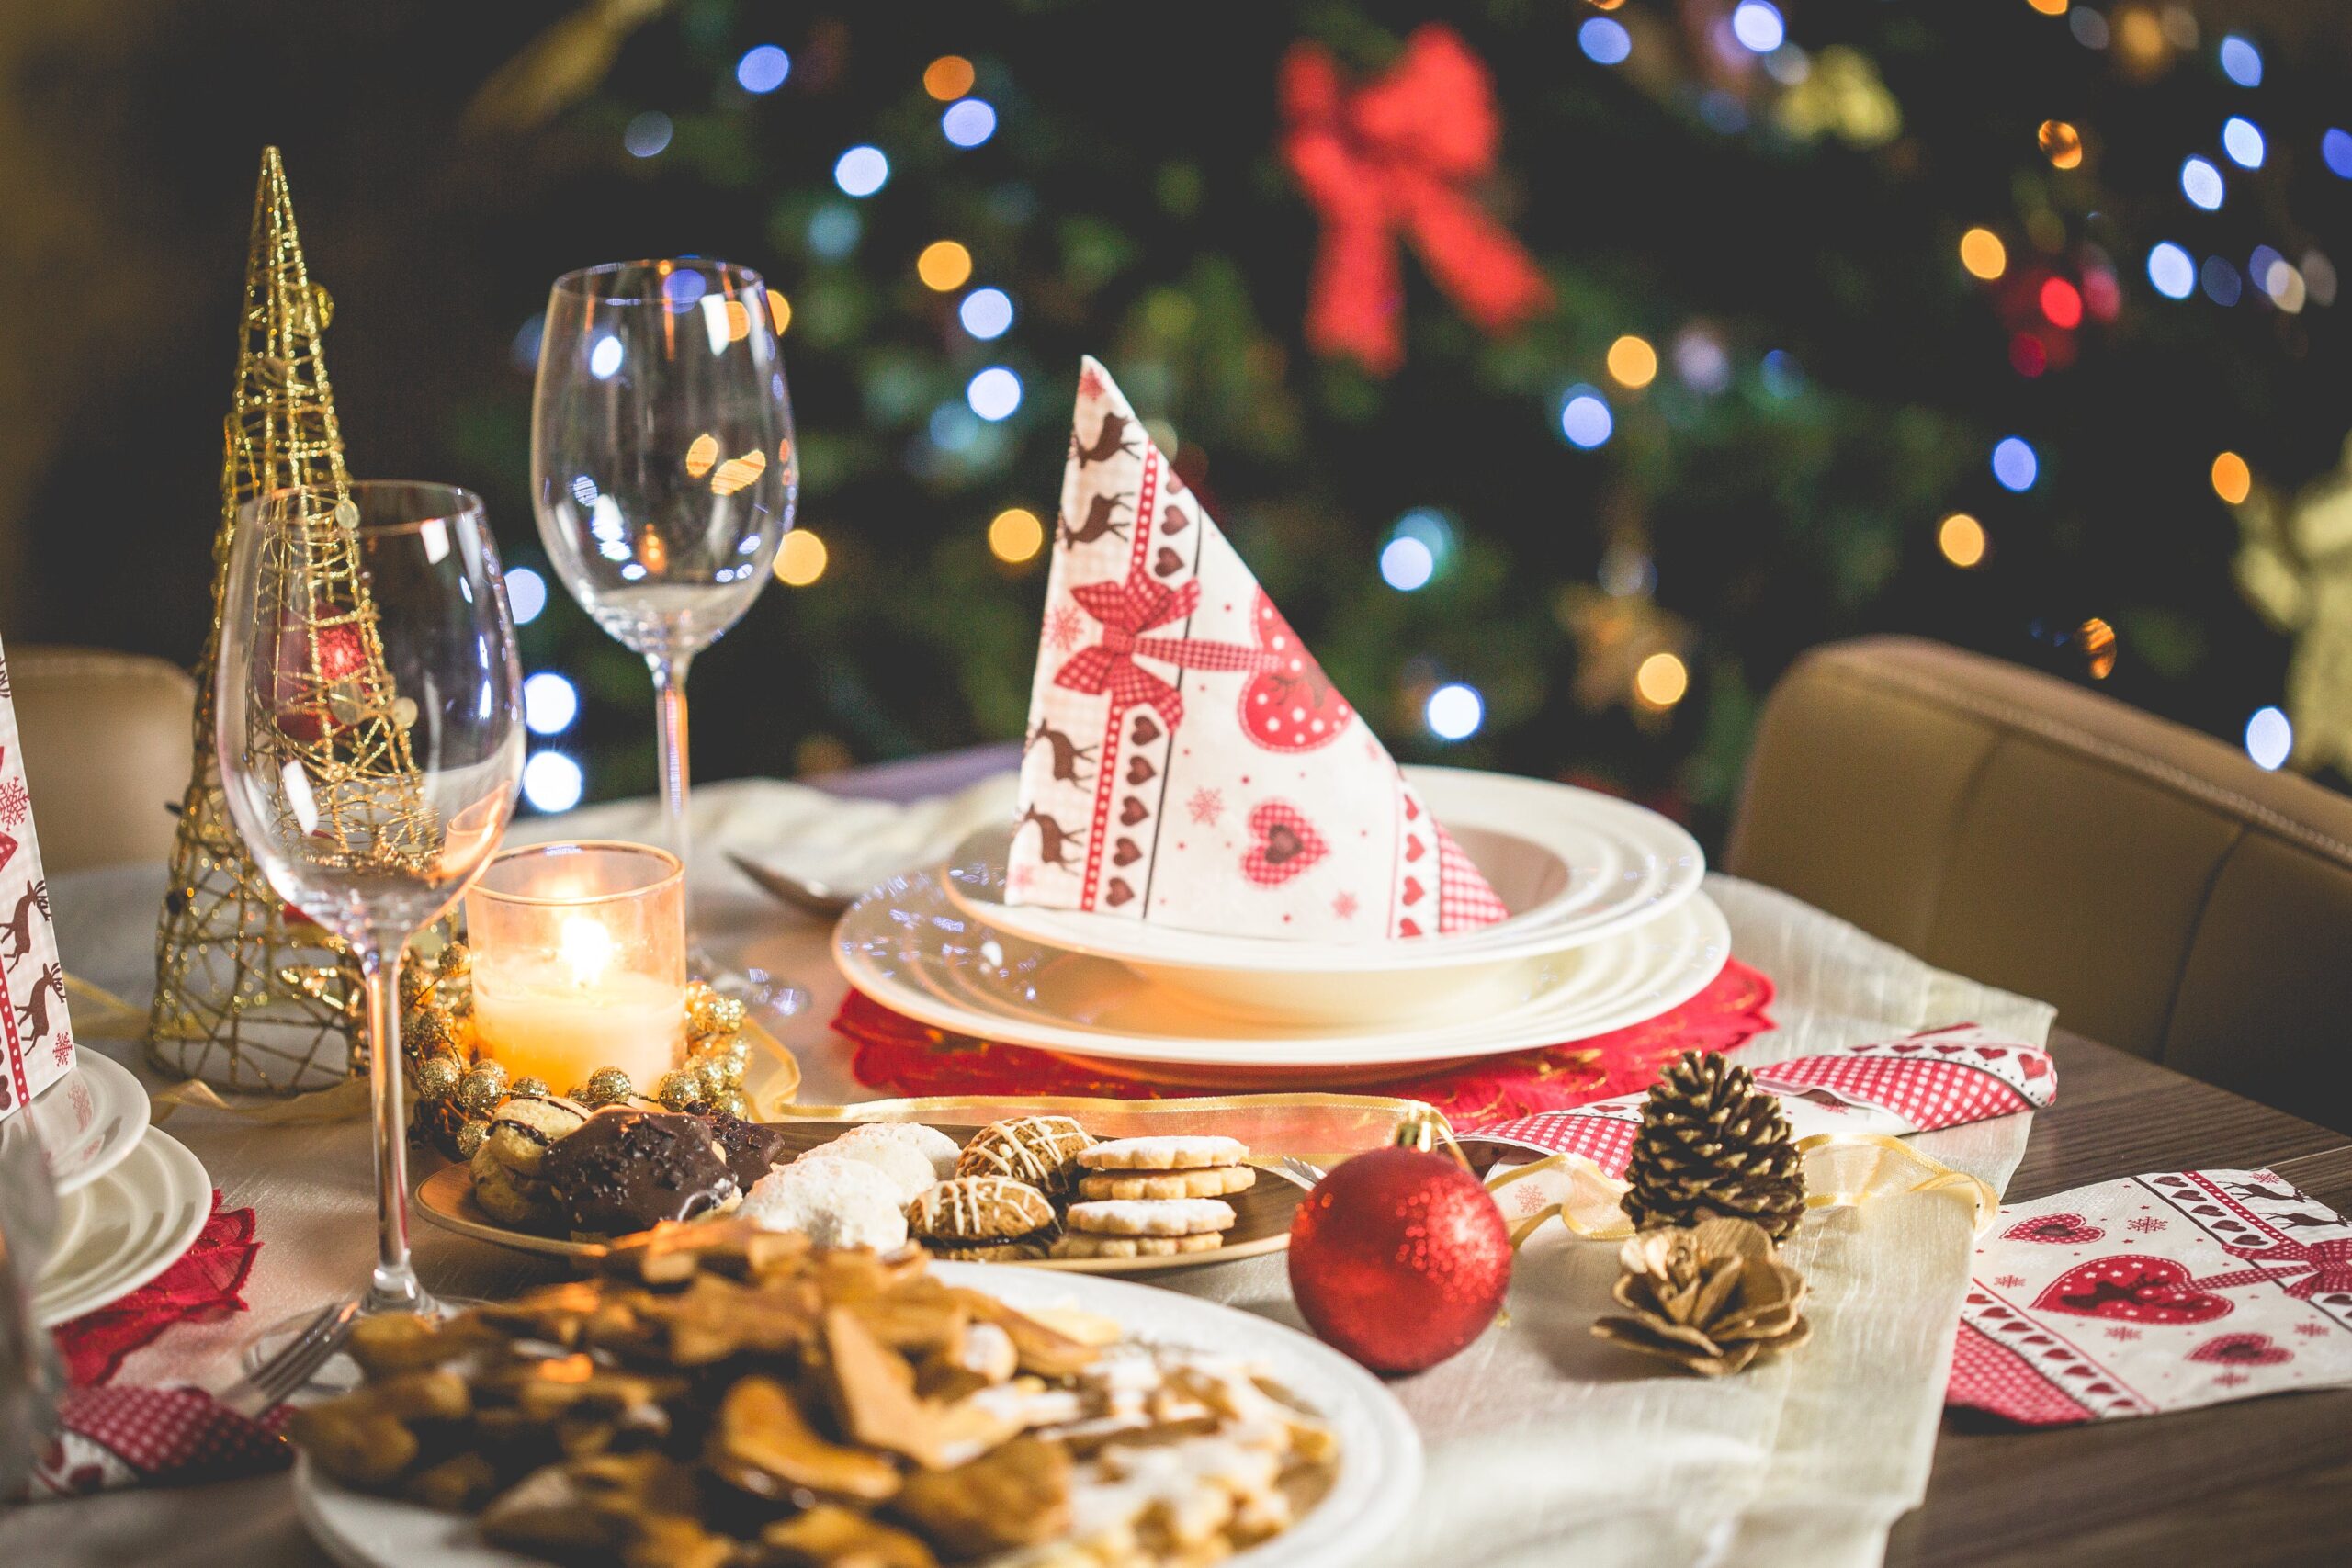 Festive Holiday - Christmas Food